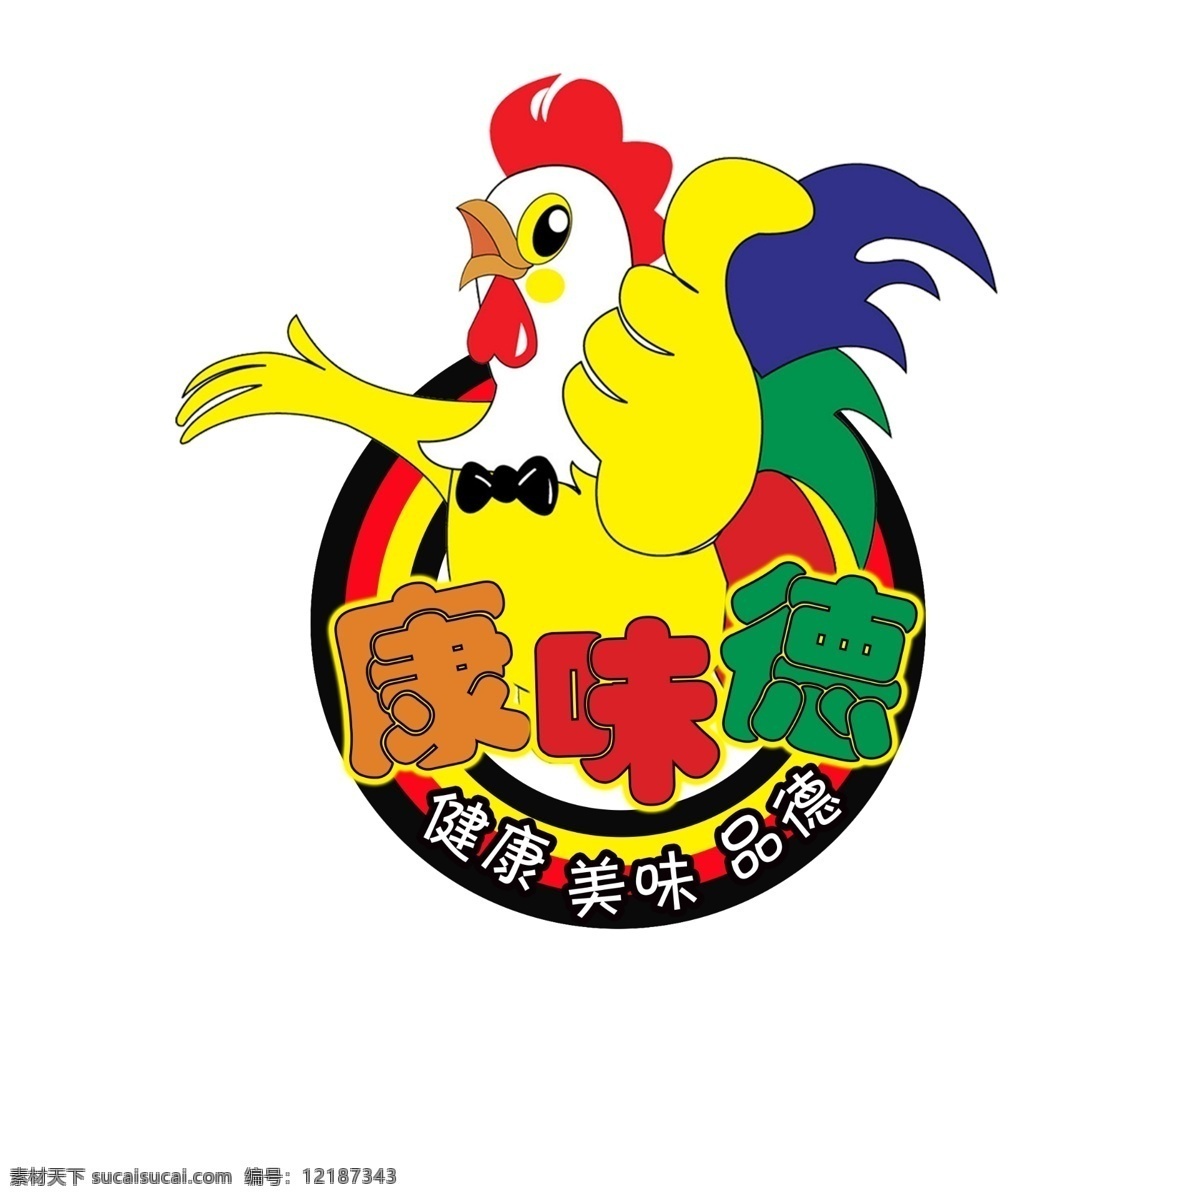 黄焖 鸡 米饭 logo 黄焖鸡 黄焖鸡米饭 康味德 康味德黄焖鸡 康 味 德 公鸡头 分层